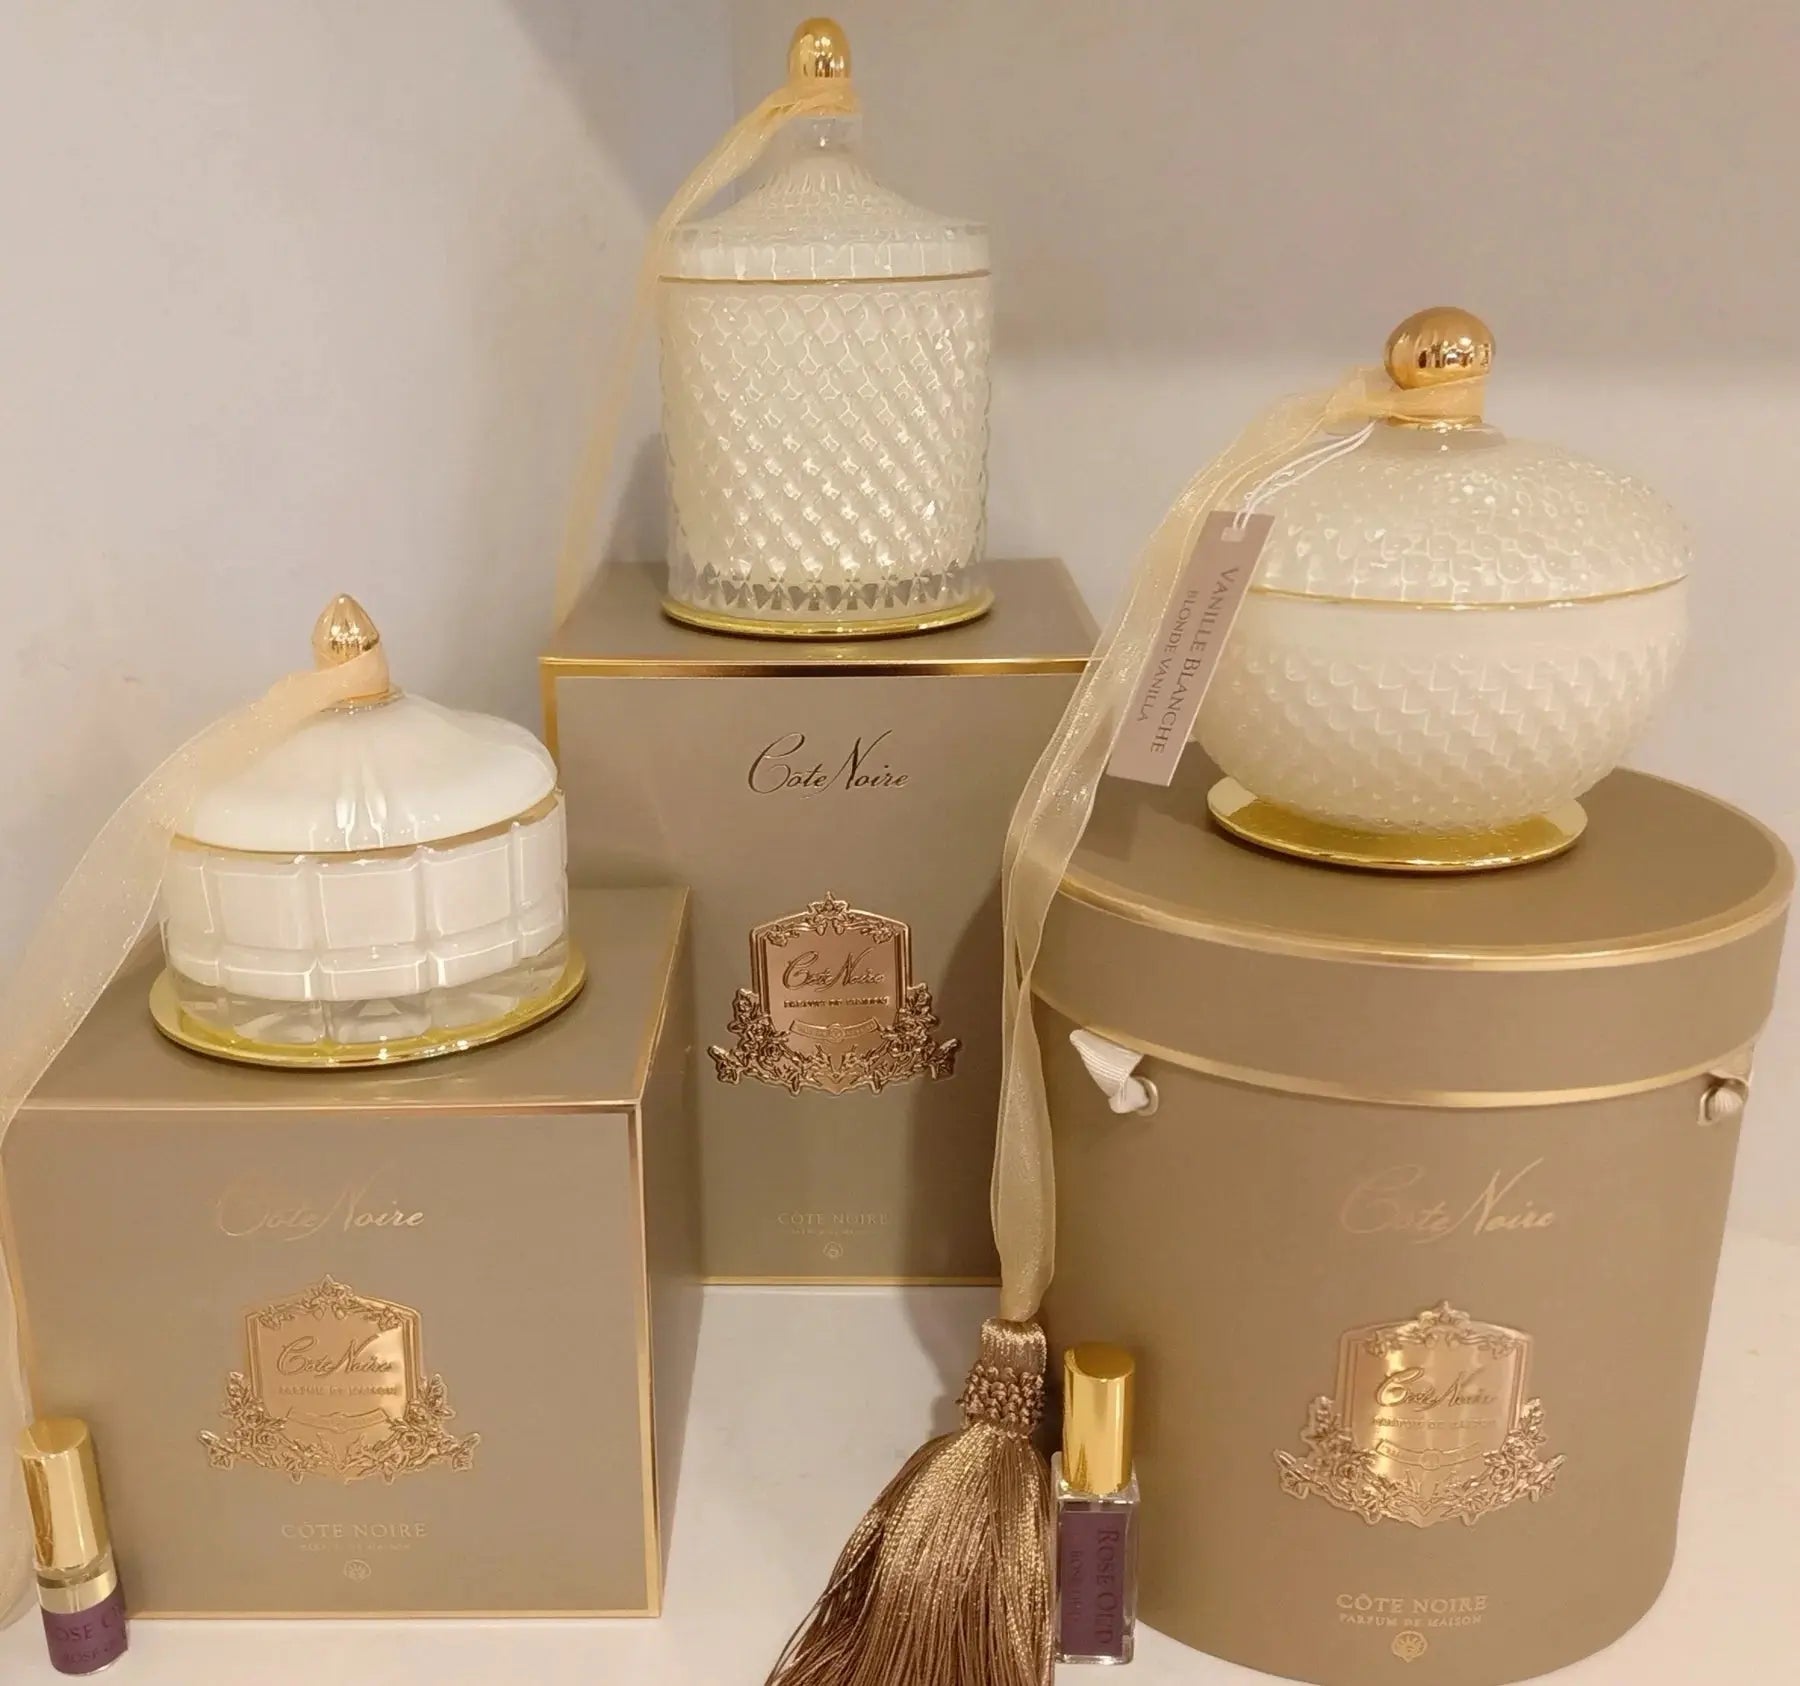 Grand Cream Art Deco Candle Blonde Vanilla -  Cote Noire -  Armani Gallery